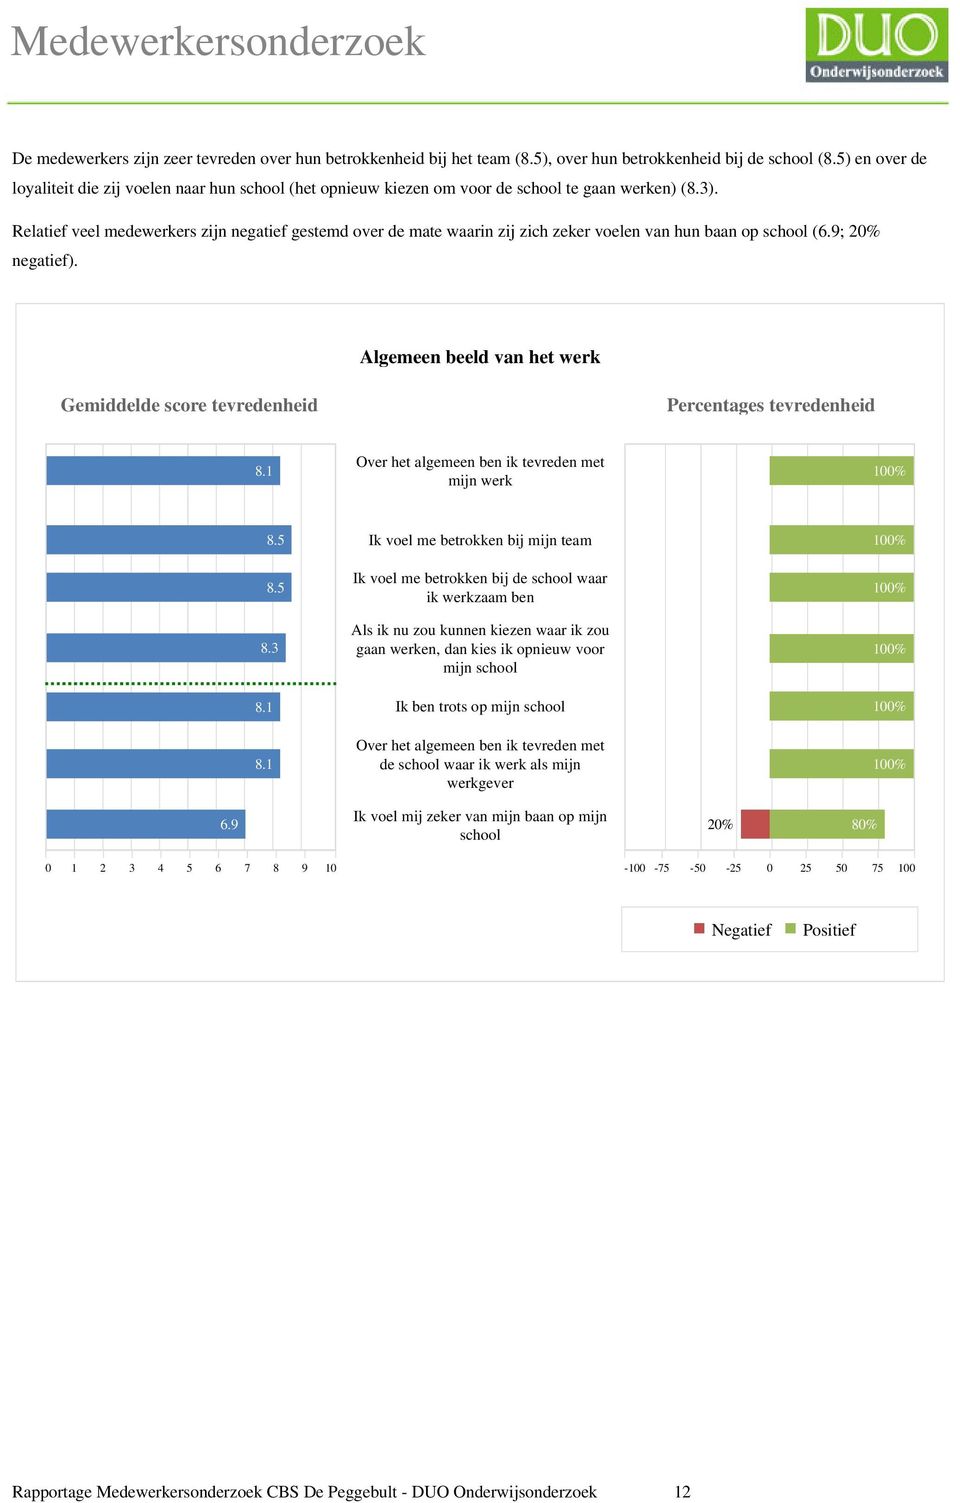 Relatief veel medewerkers zijn negatief gestemd over de mate waarin zij zich zeker voelen van hun baan op school (6.9; 20% negatief).